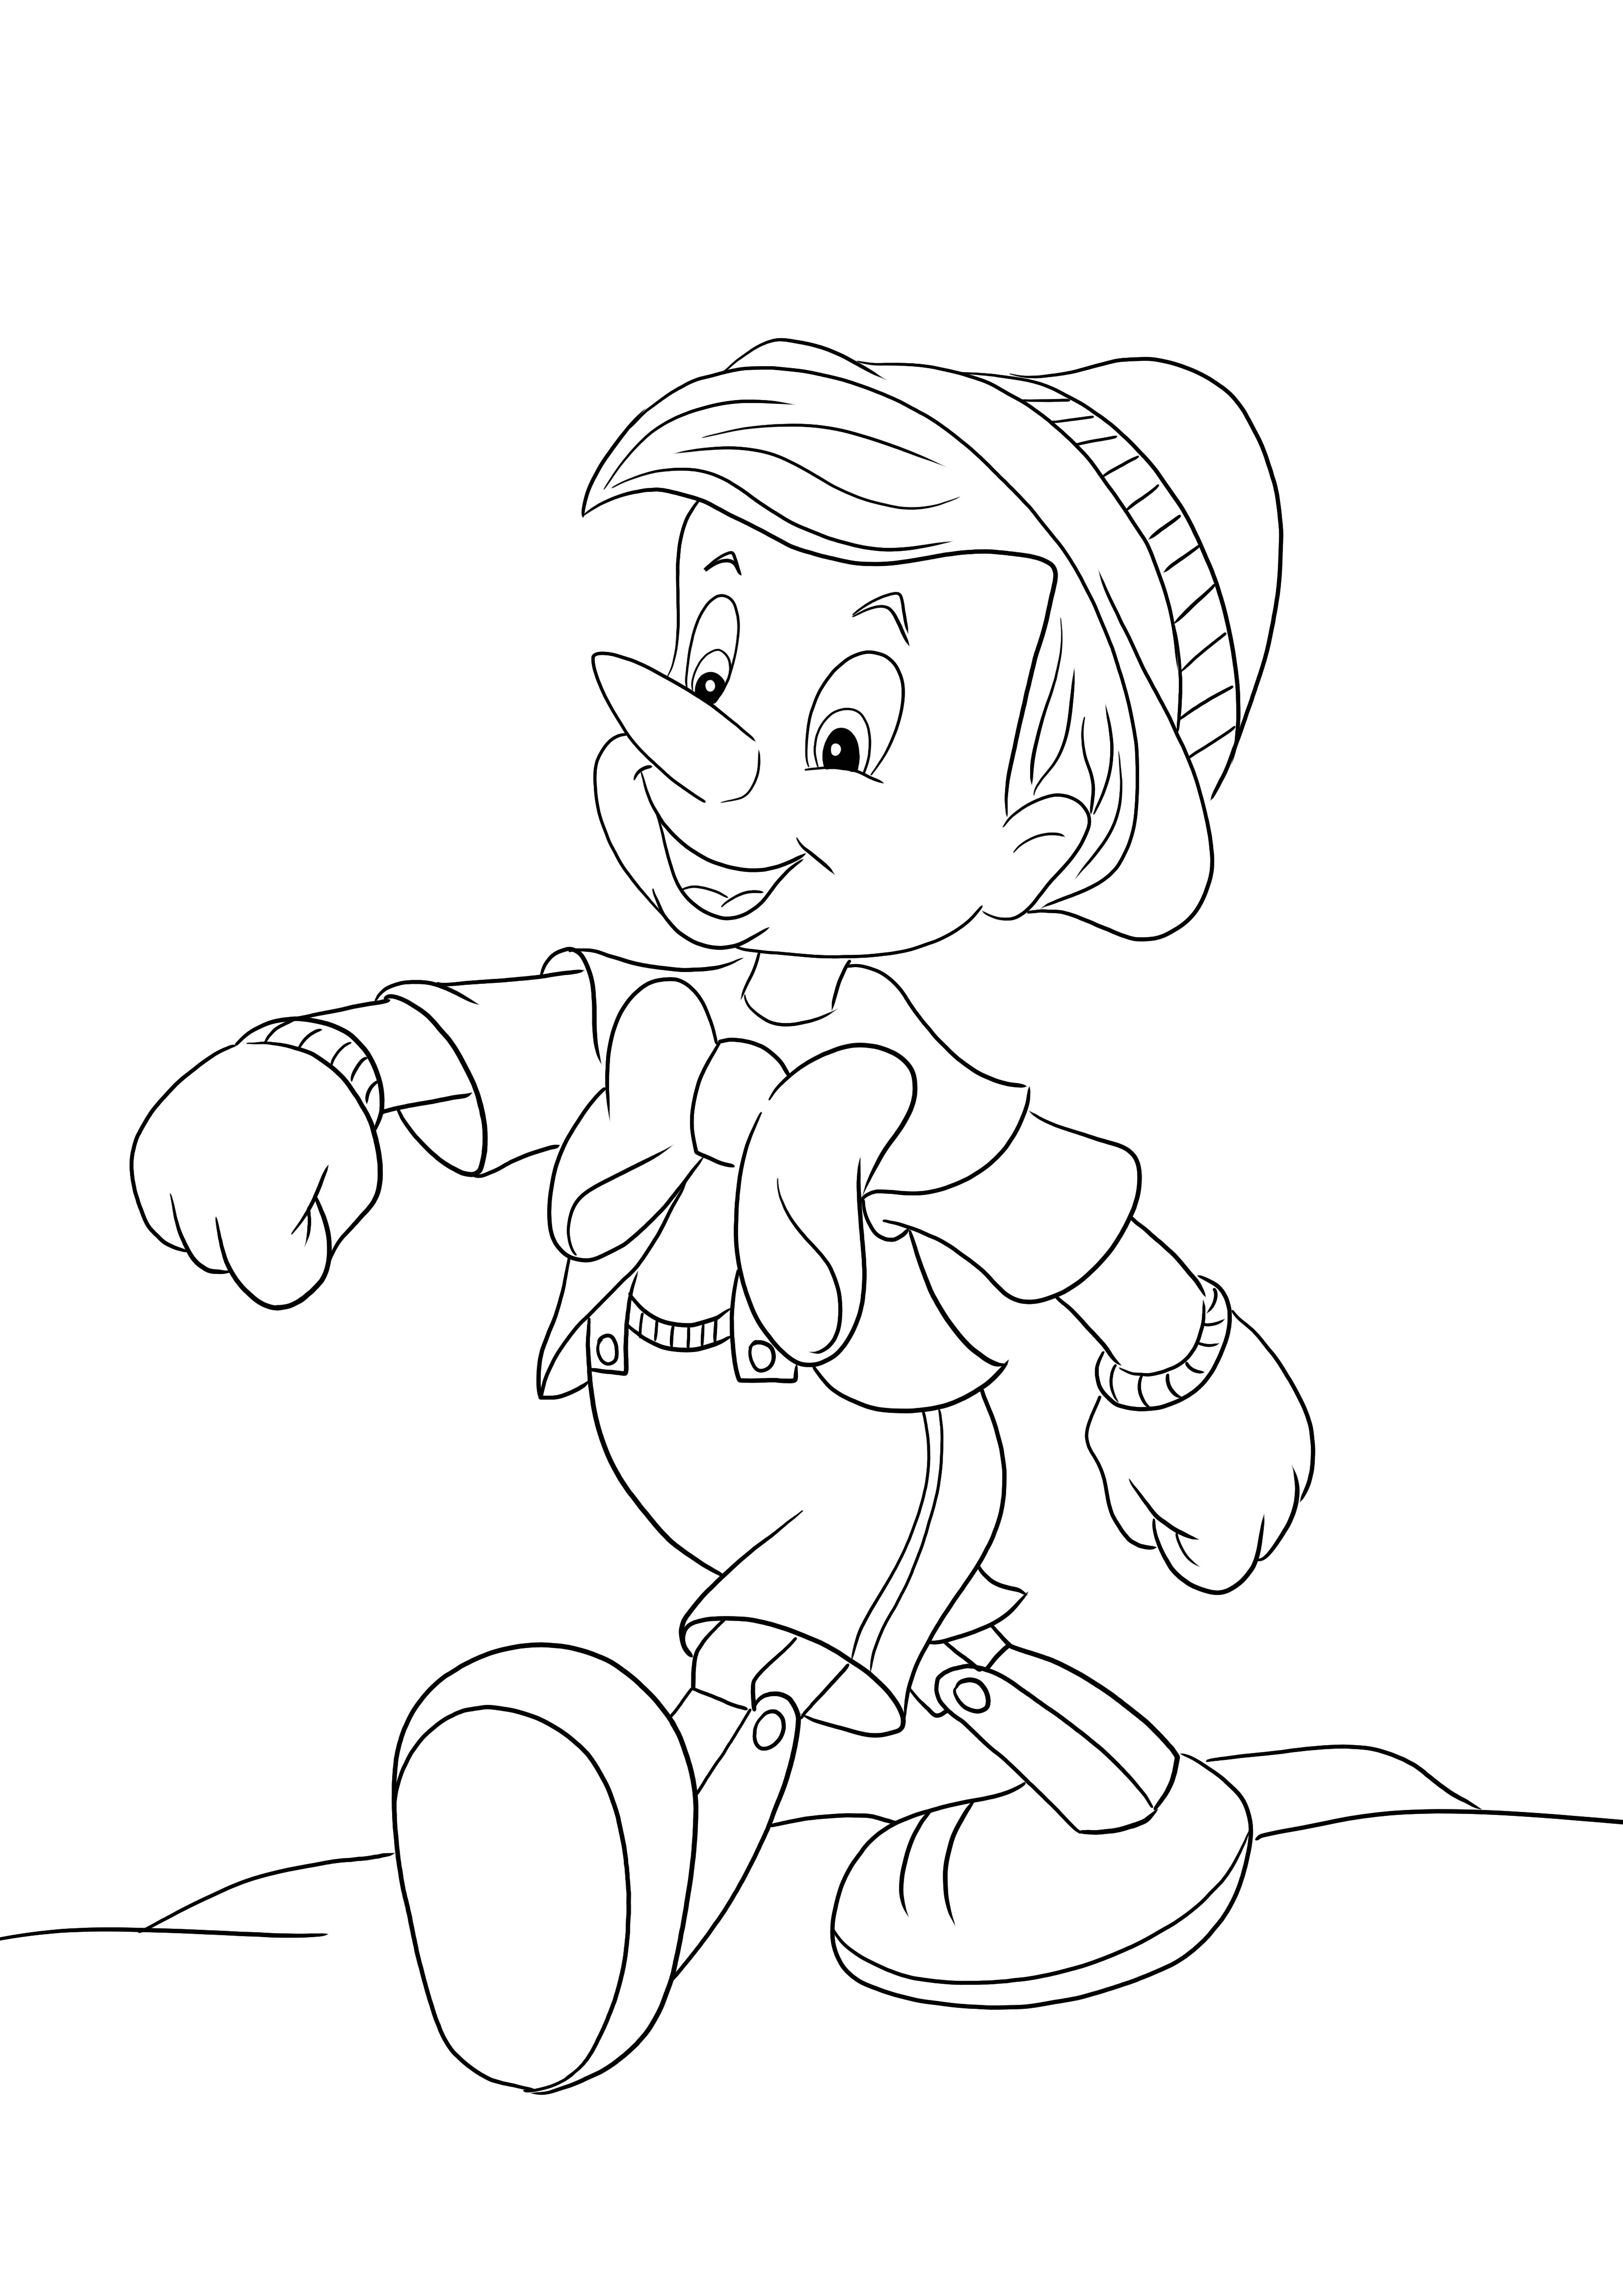 誇らしげに歩くピノキオの着色ページ - ダウンロードして着色する準備ができています